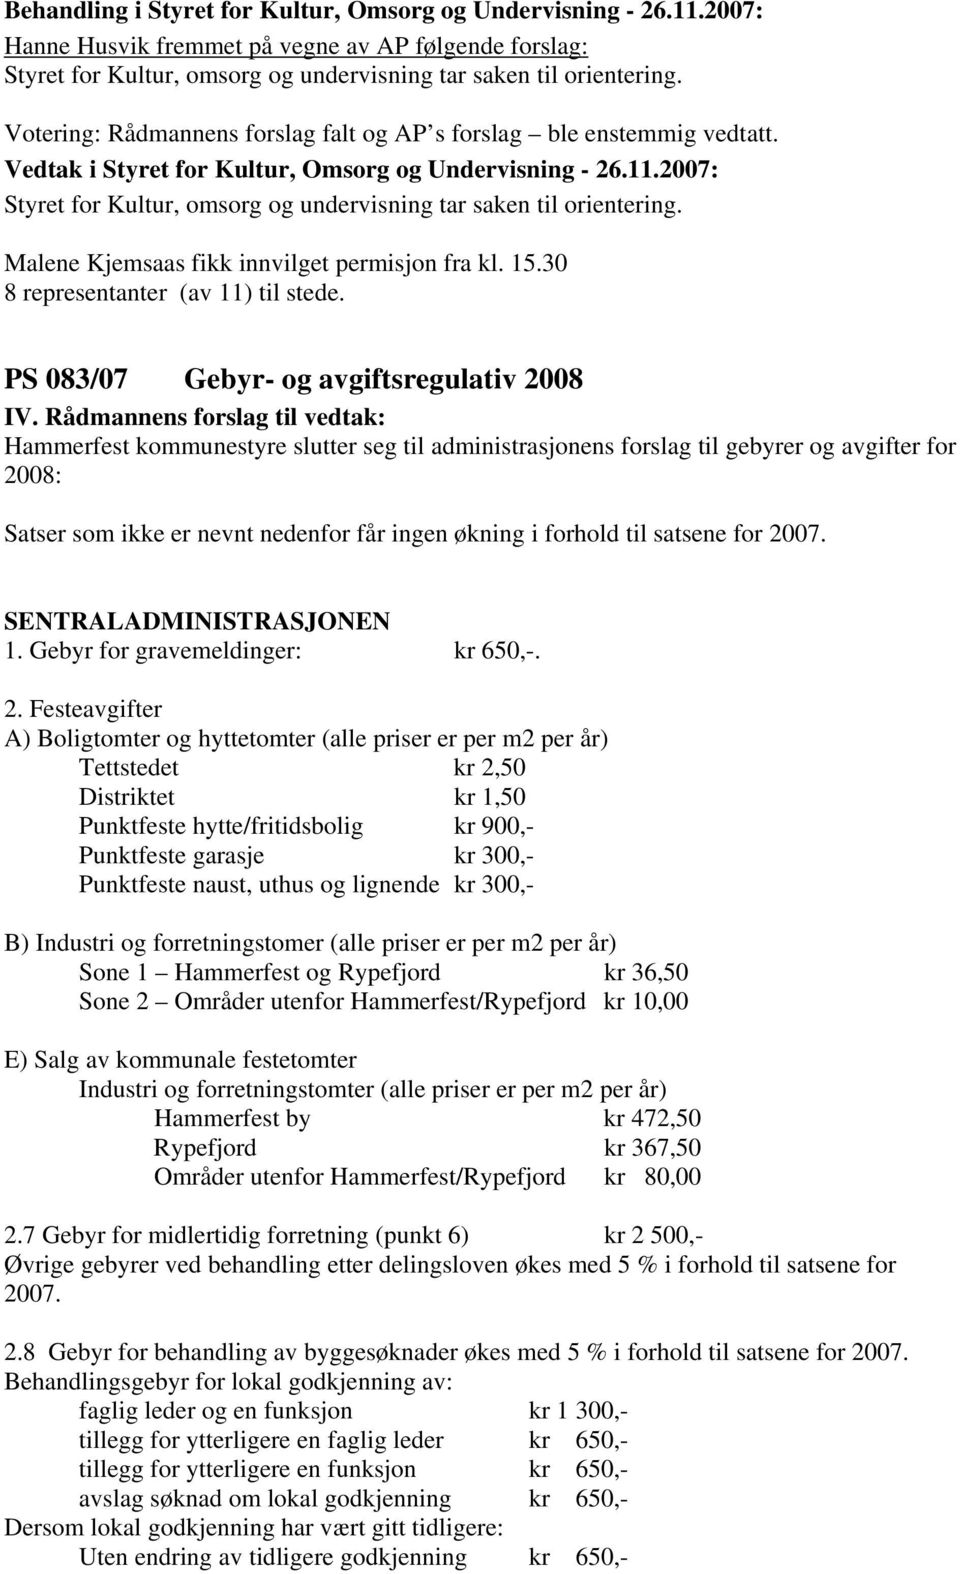 PS 083/07 Gebyr- og avgiftsregulativ 2008 Hammerfest kommunestyre slutter seg til administrasjonens forslag til gebyrer og avgifter for 2008: Satser som ikke er nevnt nedenfor får ingen økning i